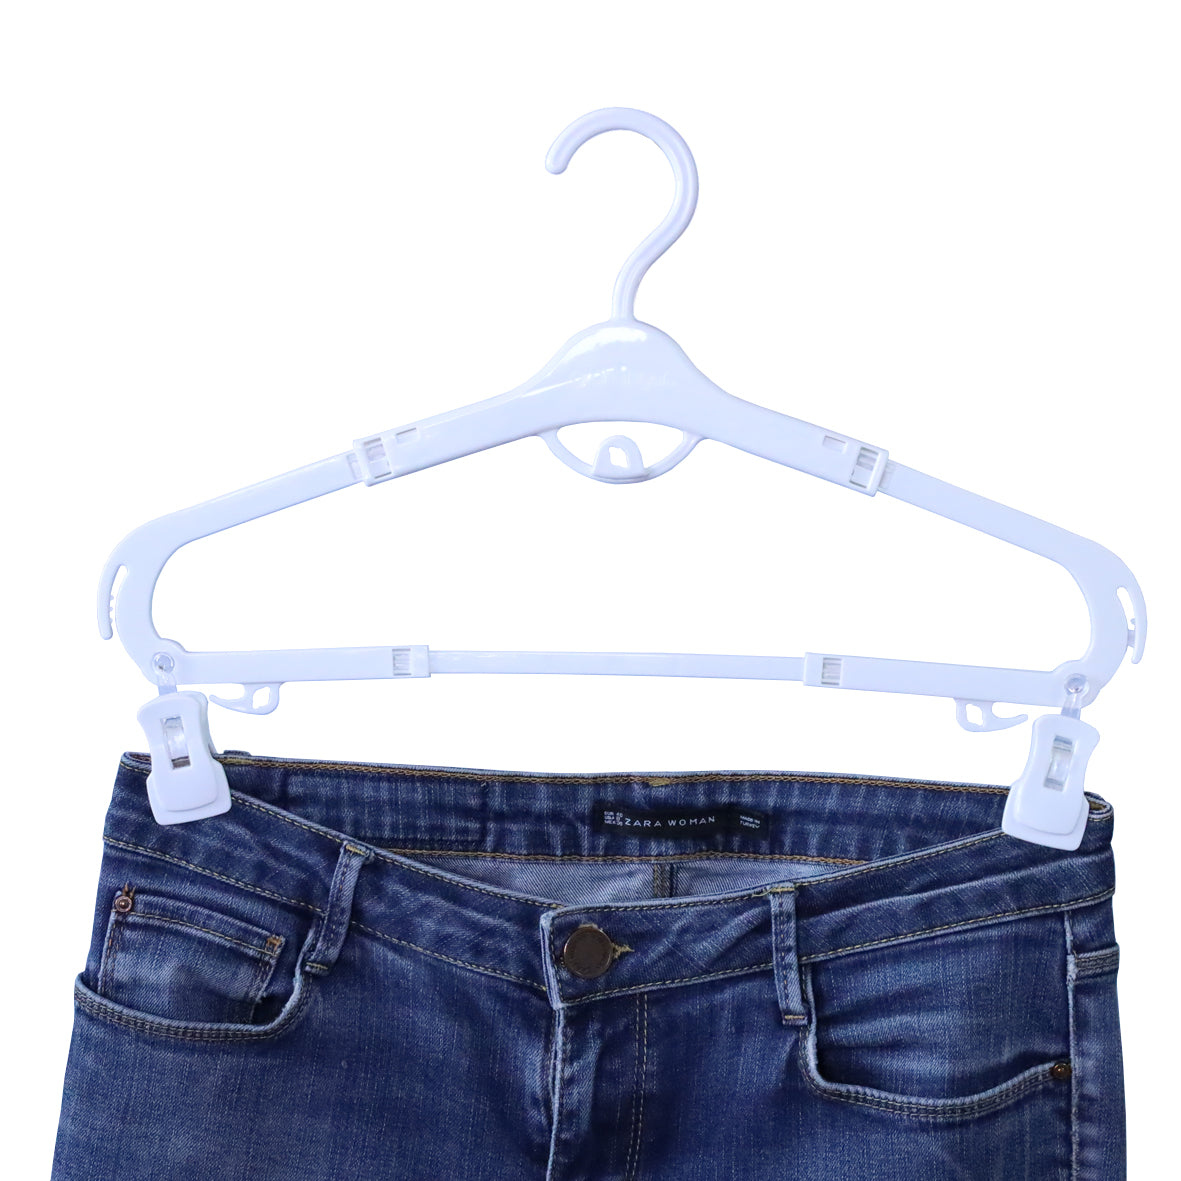 Grohanger - hanger clips for jeans